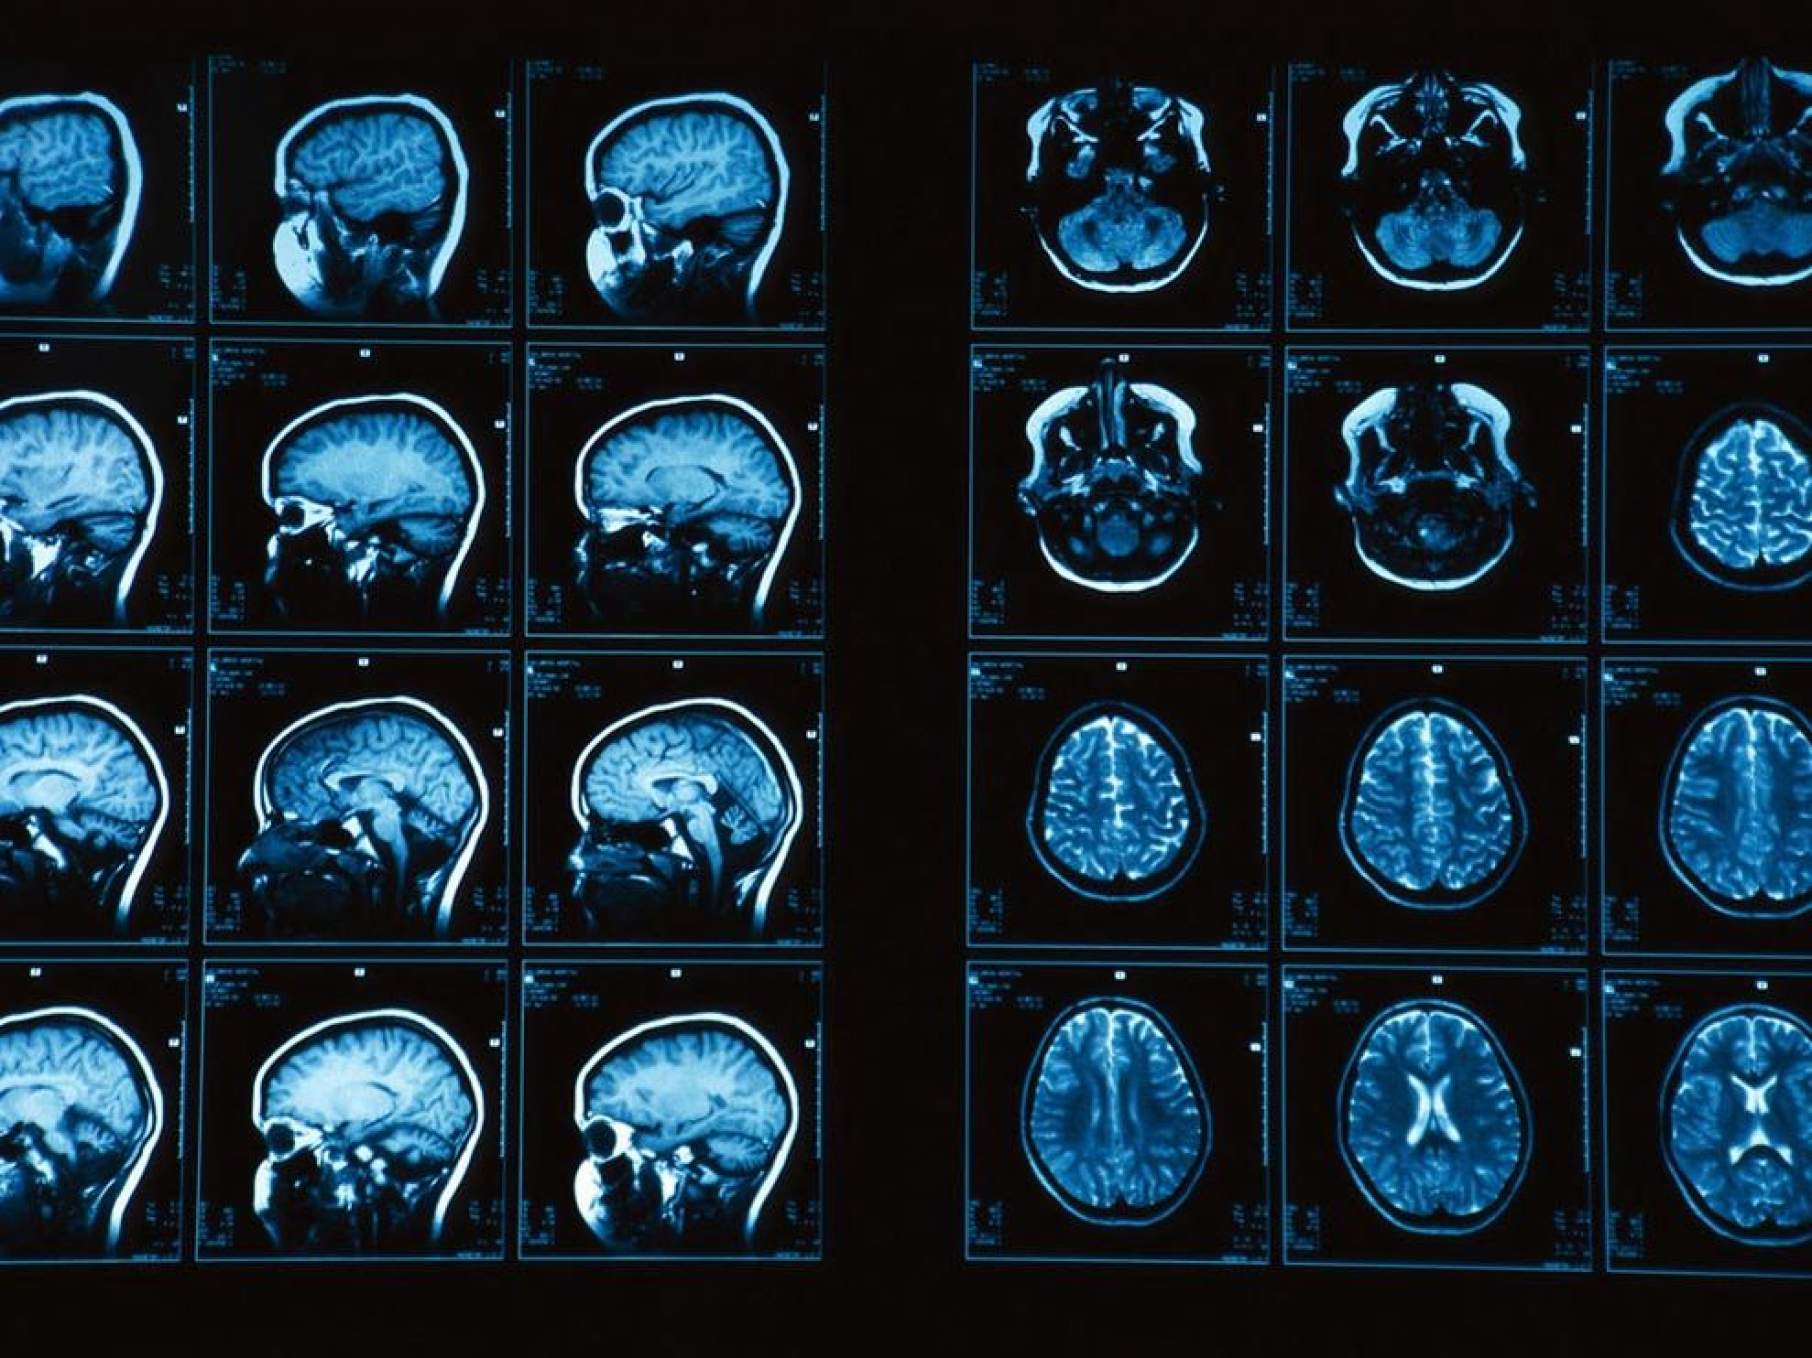 Мрт головного мозга цена нижний новгород. Кт томограмма головного мозга. Магнитно-резонансная томография мрт снимки. Компьютерная томография кт головного мозга. Магнито-резонансная томография головного мозга.